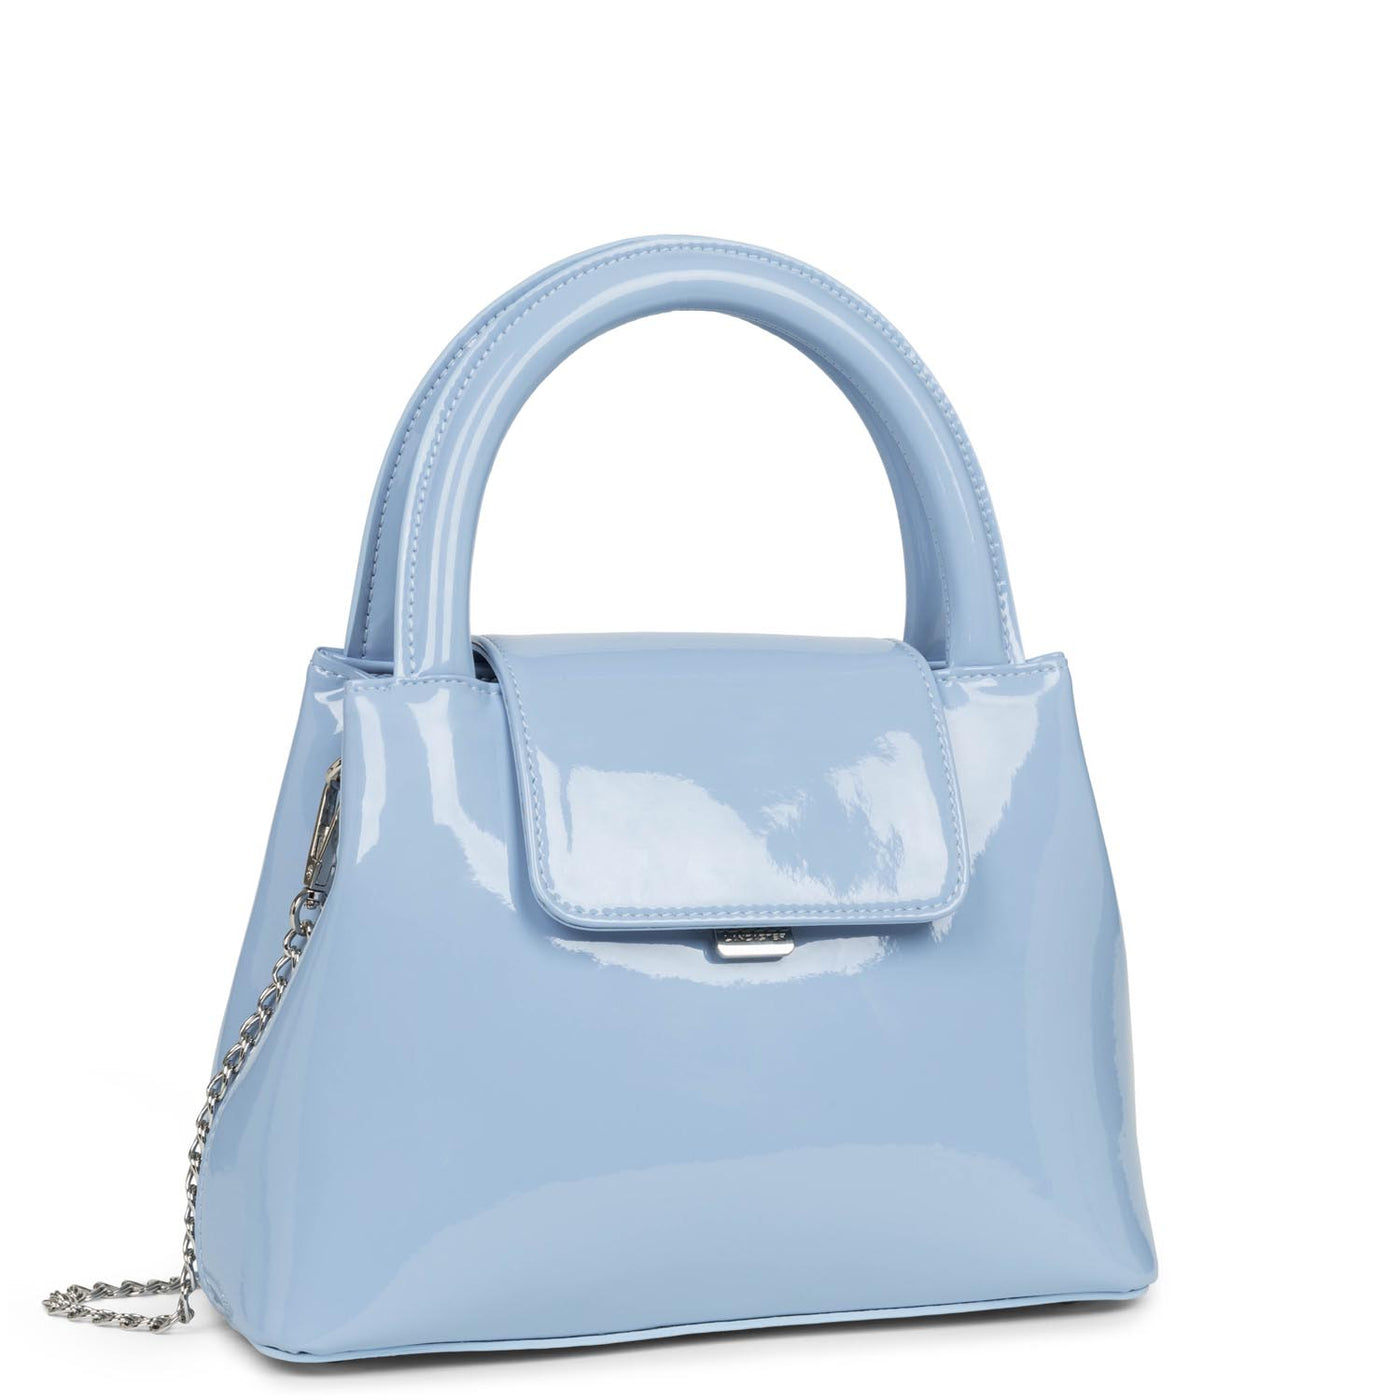 handbag - carla vernis #couleur_bleu-vernis